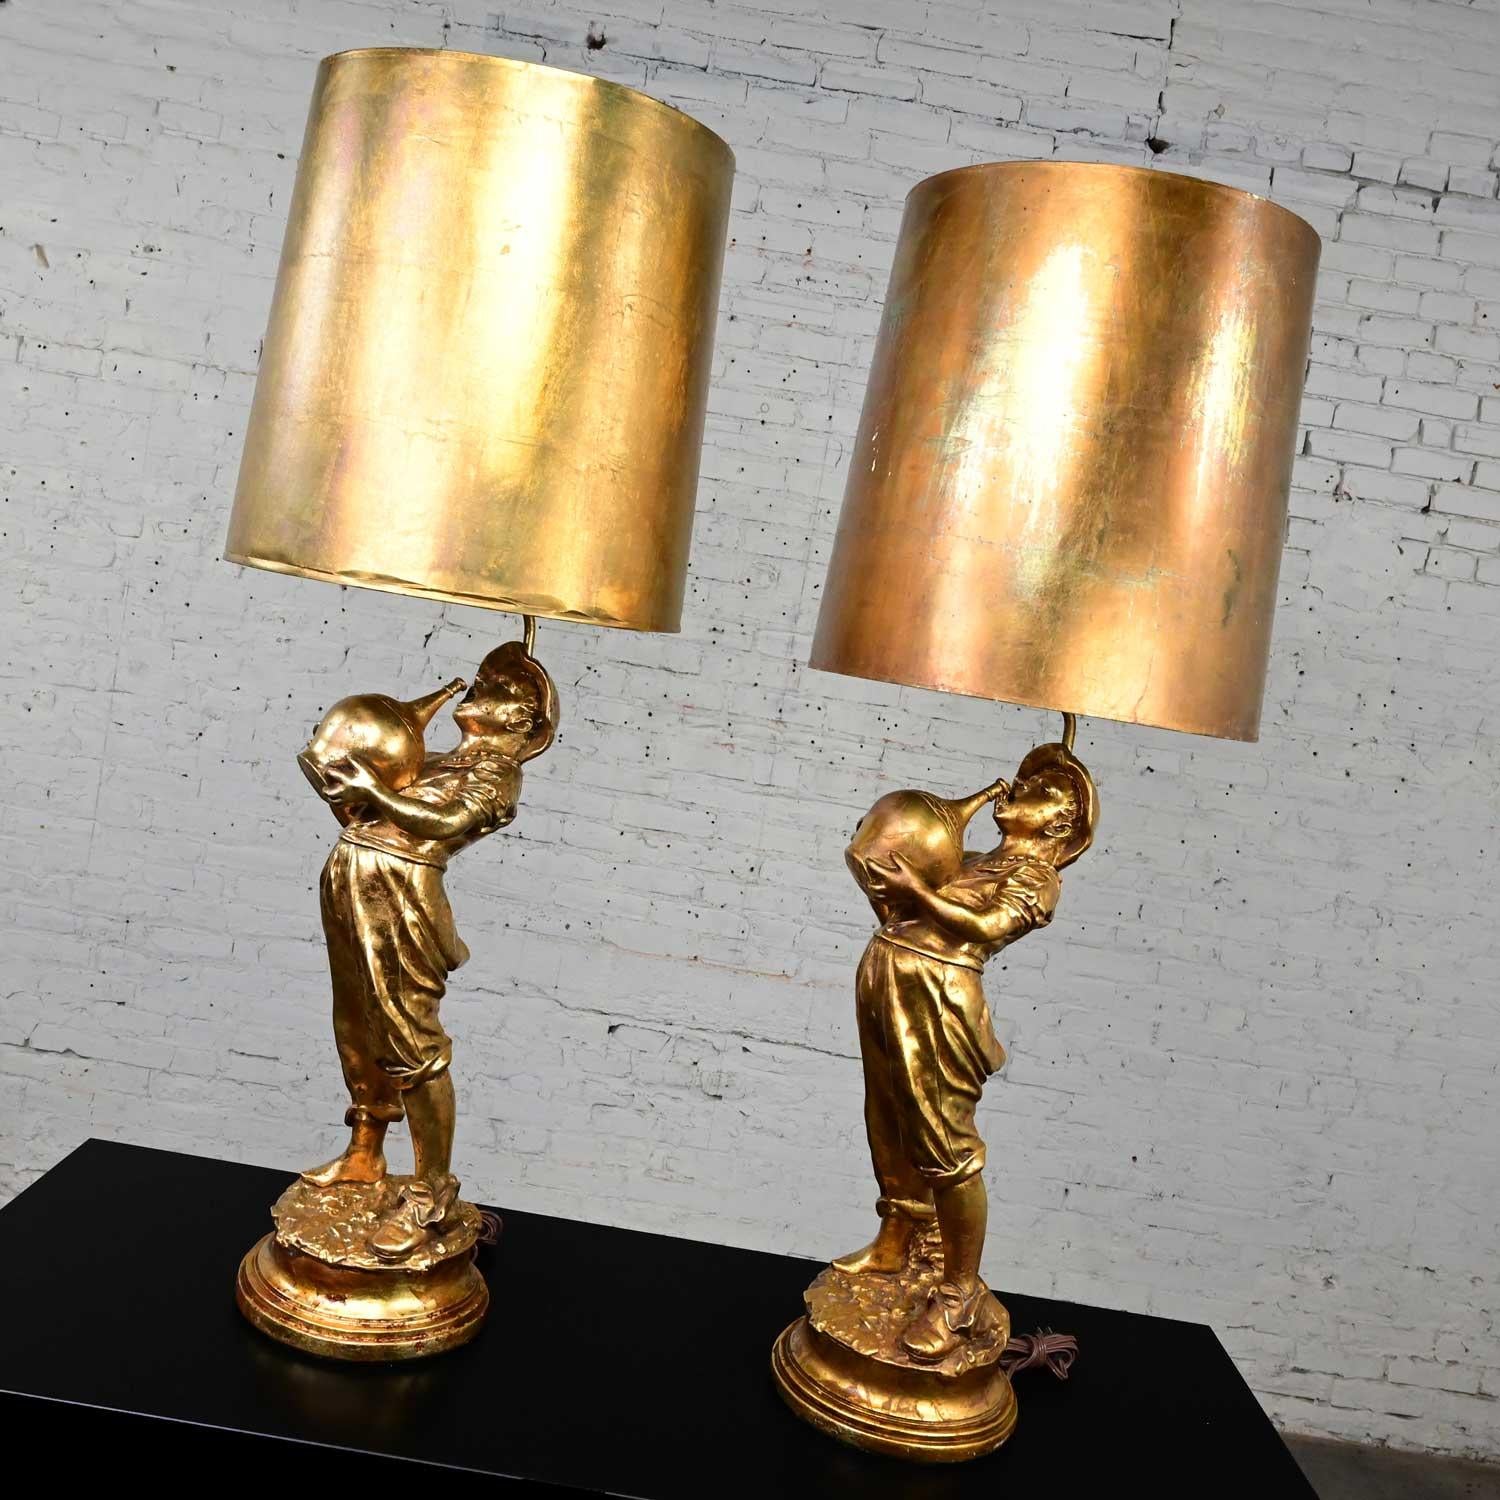 Fabuleuse paire de lampes en plâtre doré à la main de style Régence hollywoodienne du milieu du siècle, représentant un garçon avec une cruche et des abat-jours légèrement effilés en feuilles d'or ou dorés dans le style de la Marbro Lamp Company.